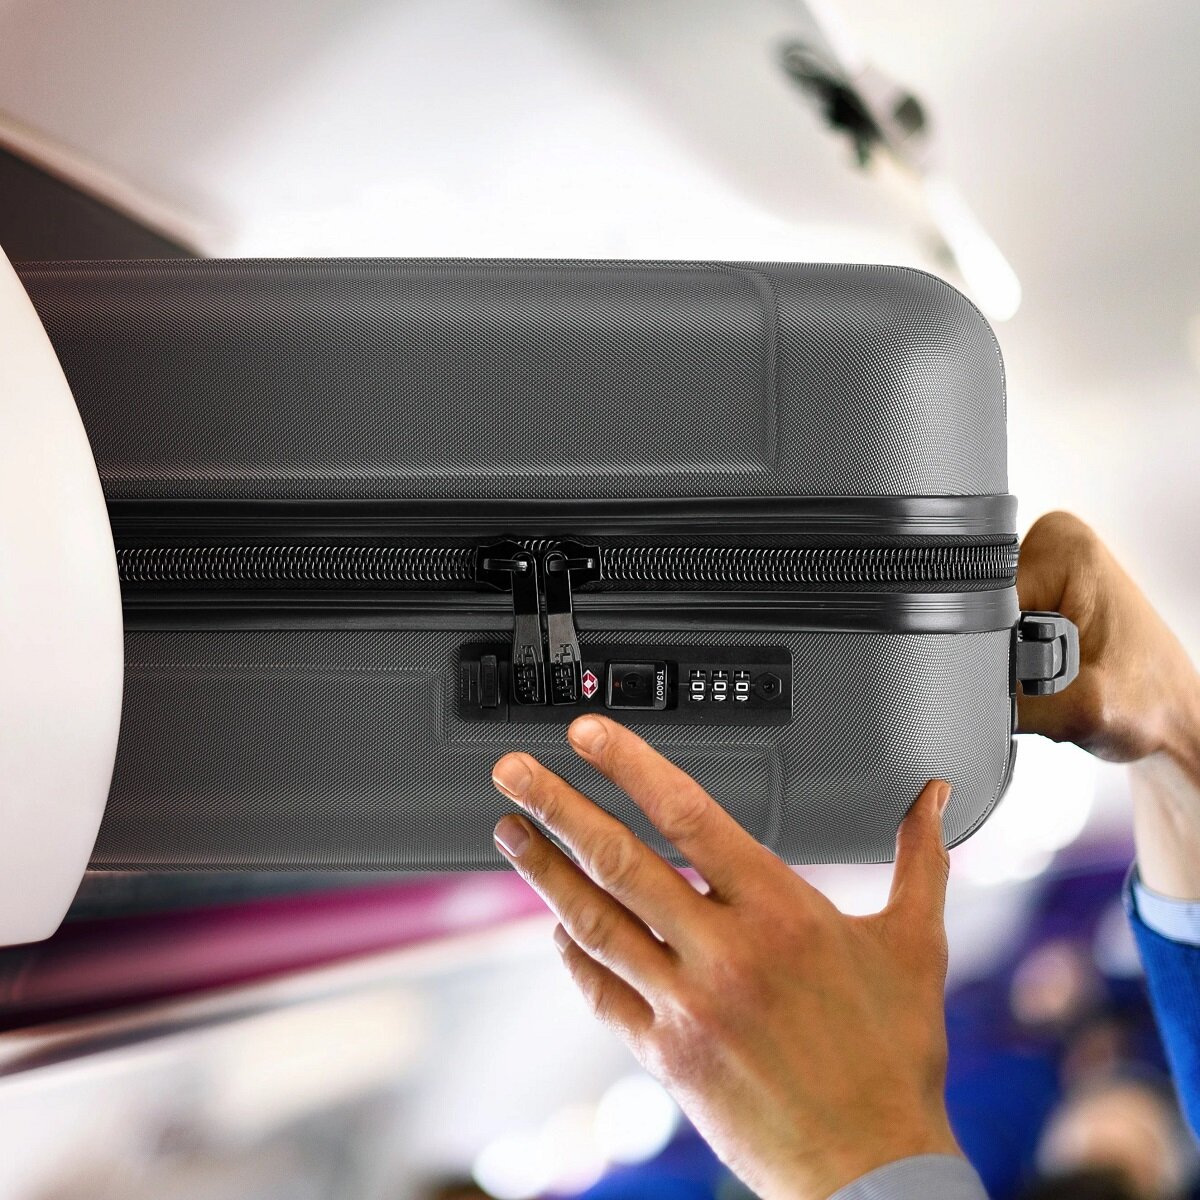 Walizka Anpa mała  antracytowa  wkładanie  walizki w kabinie samolotu w miejsce na bagaże nad fotelem